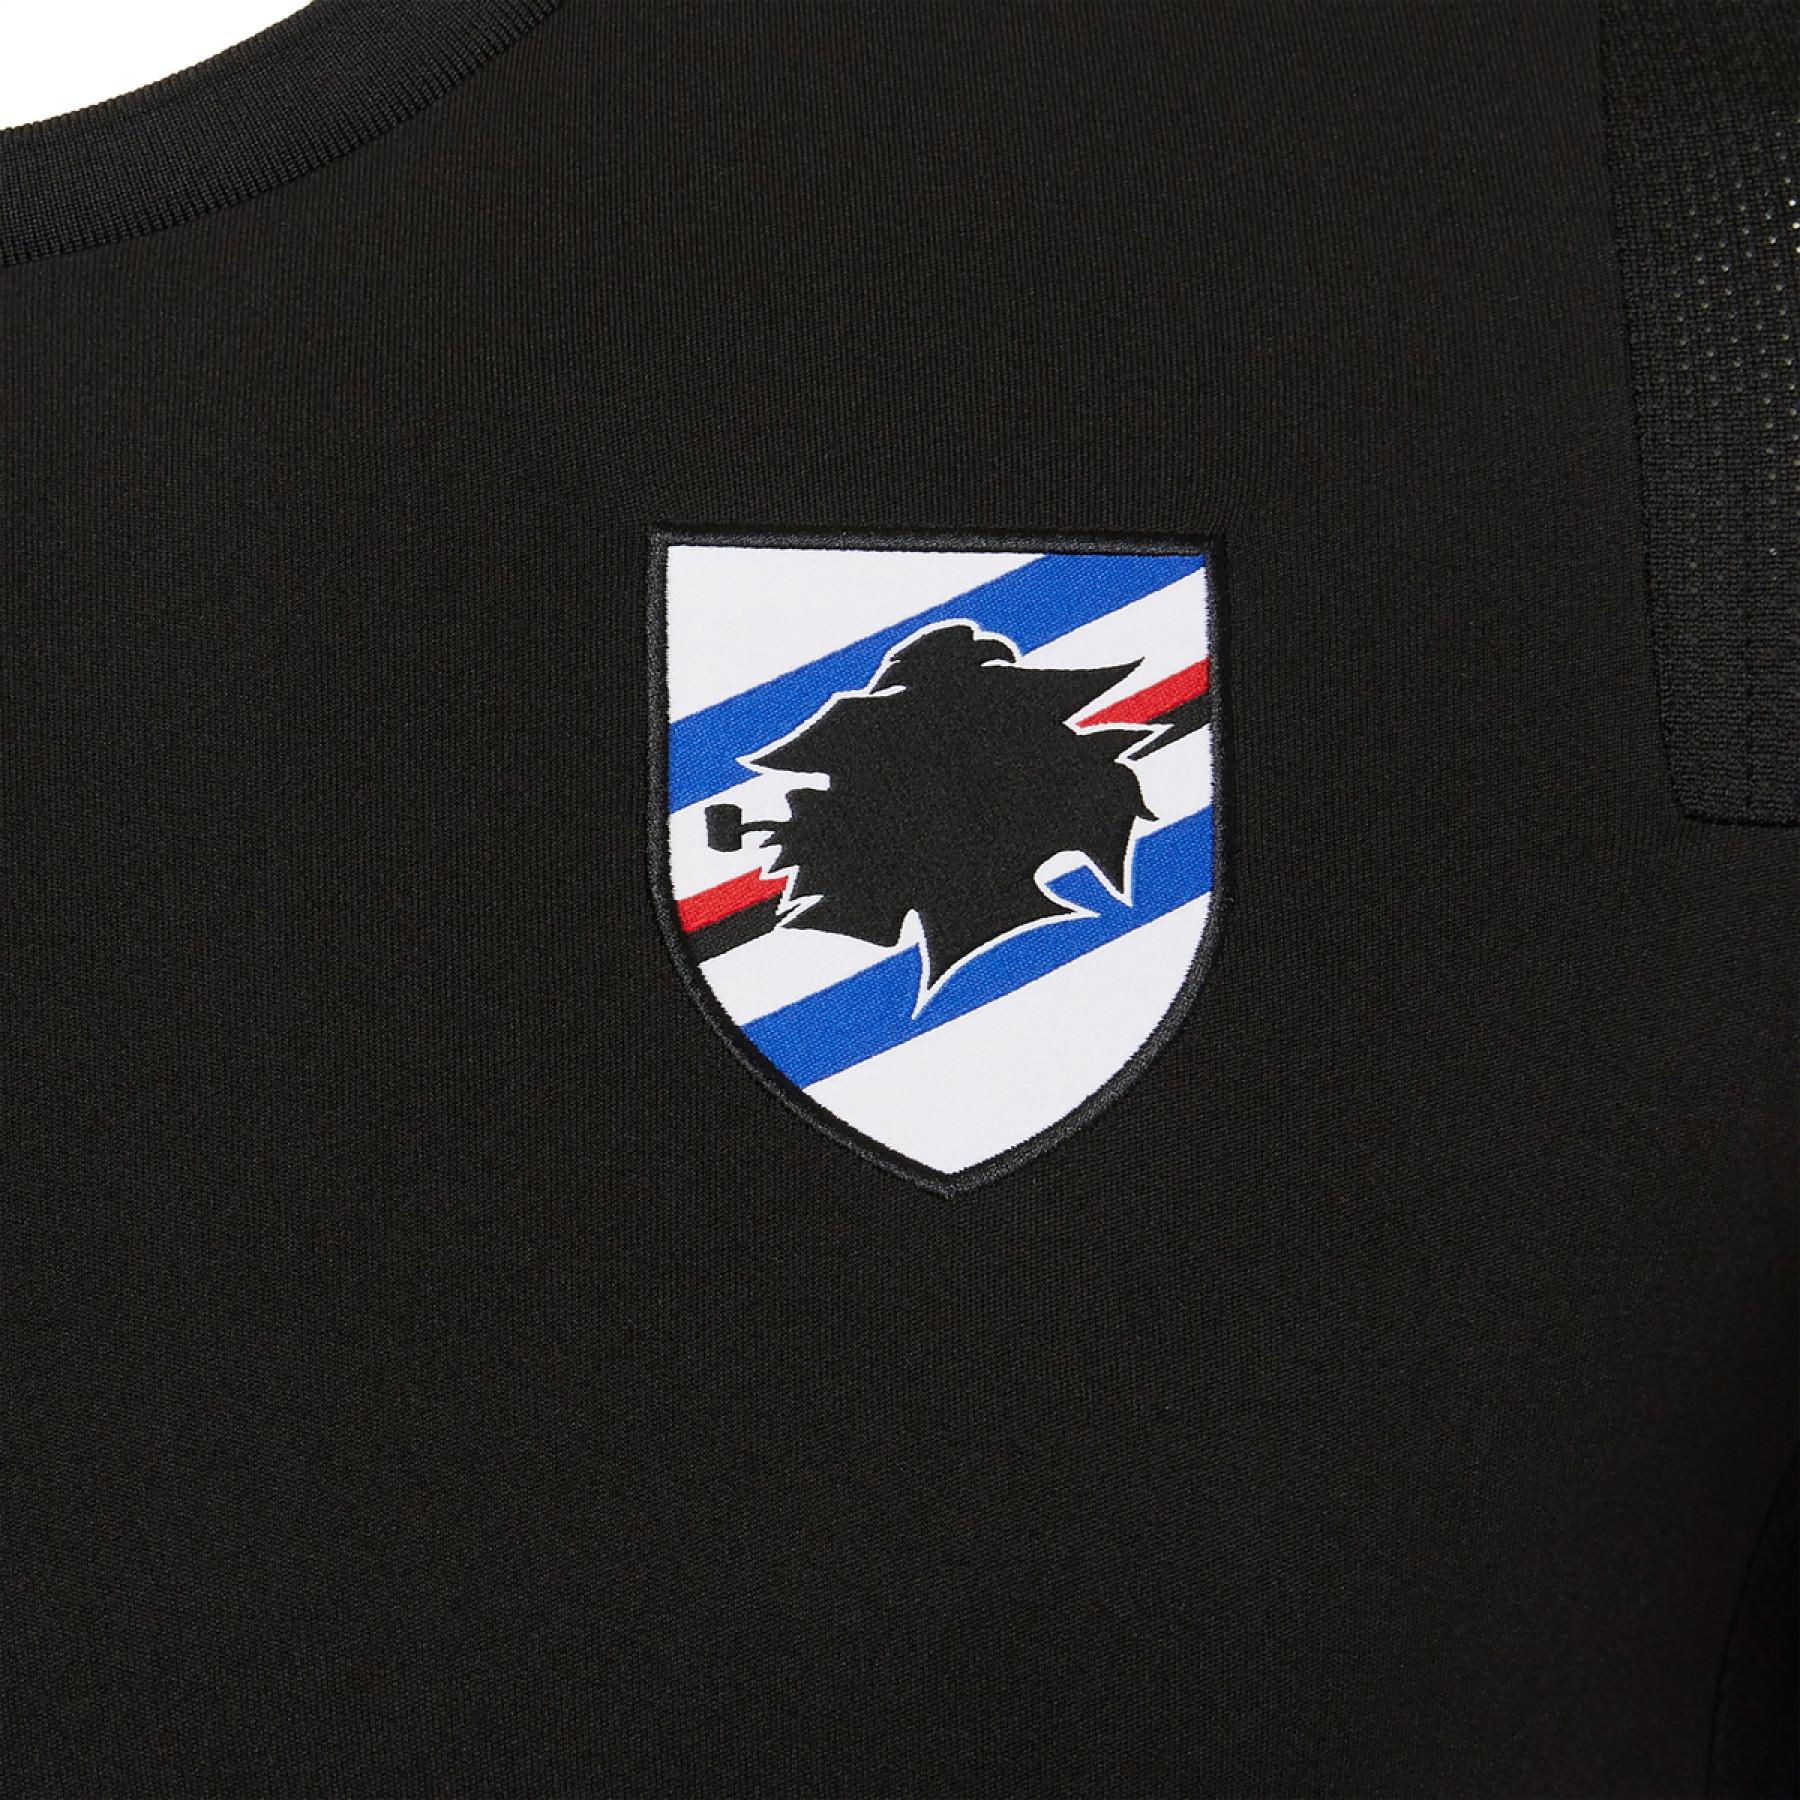 Camiseta personal uc sampdoria 2020/21